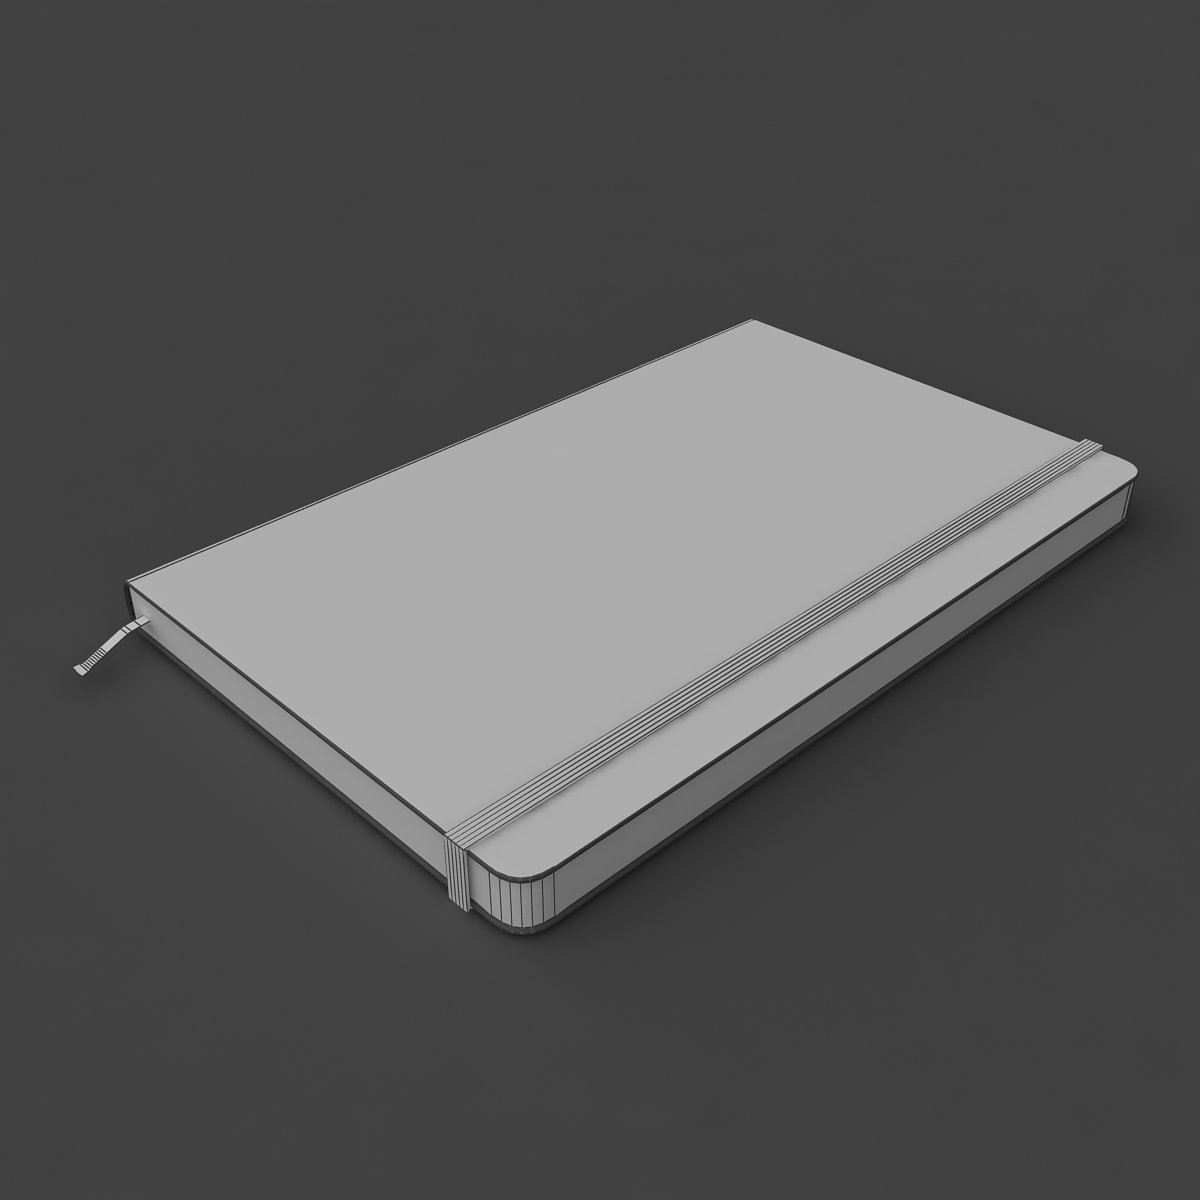 3D moleskine sketchbook 02 03 - TurboSquid 1212146